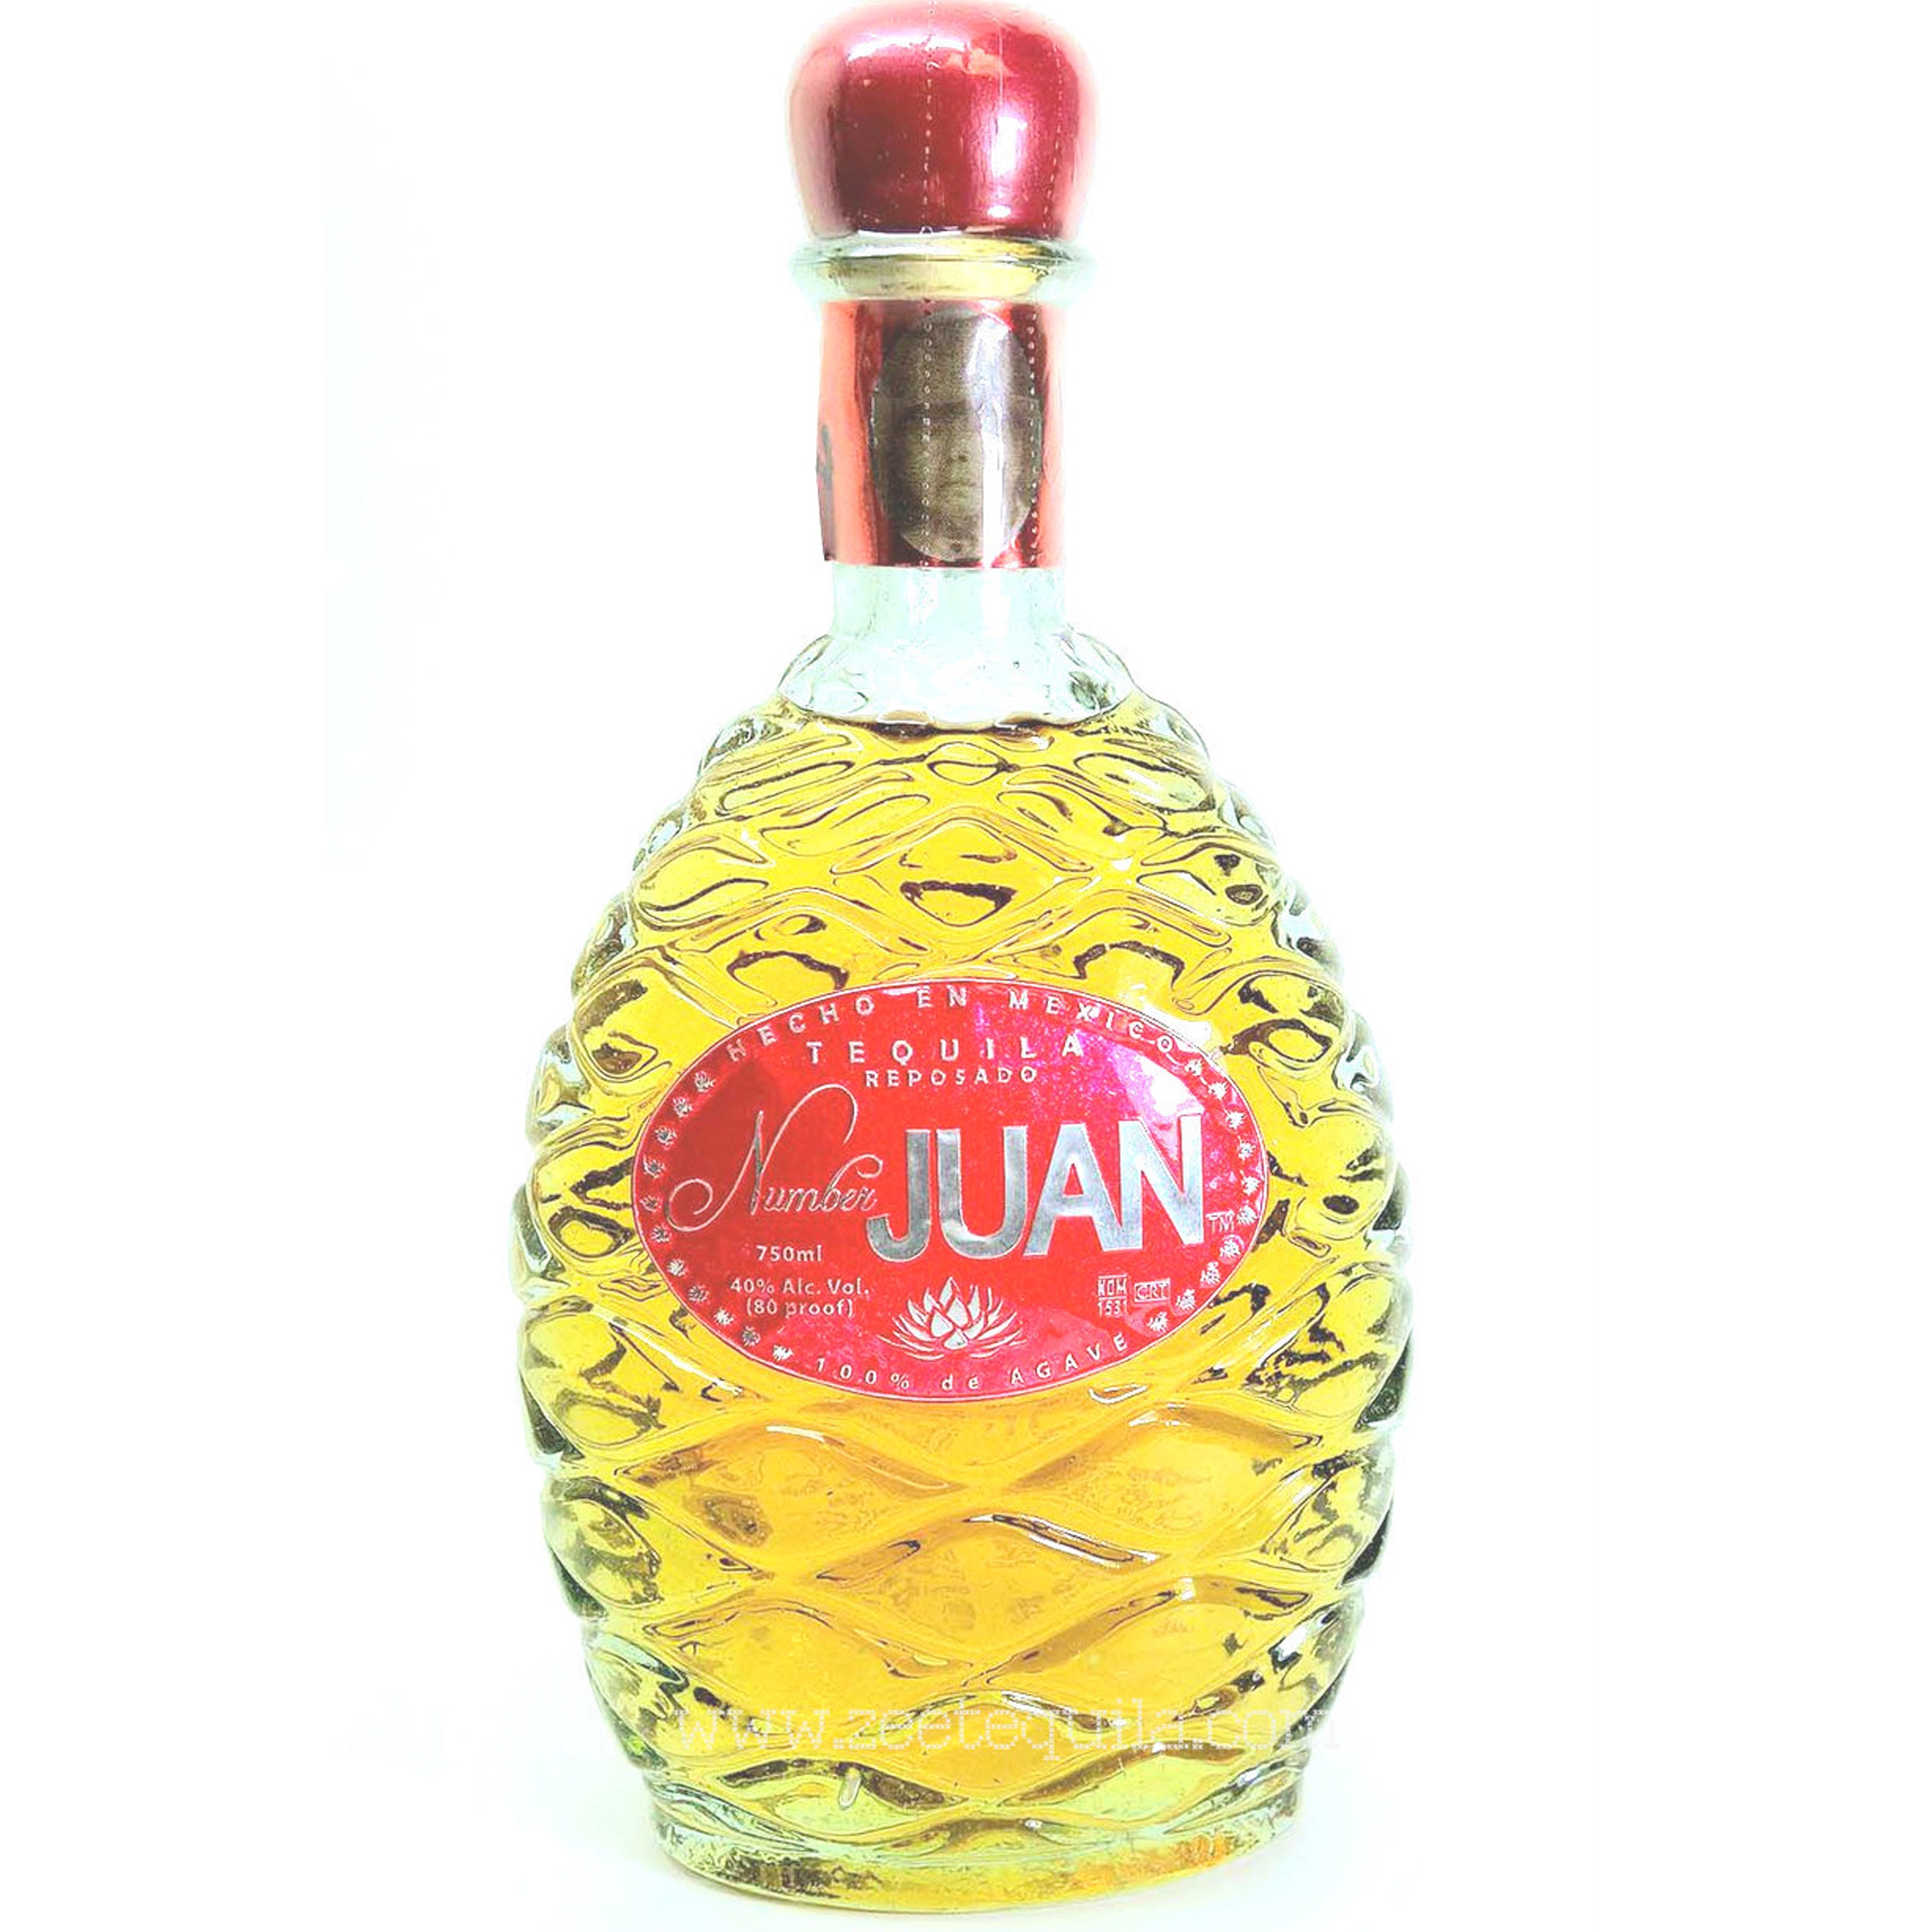 Number Juan Reposado Tequila